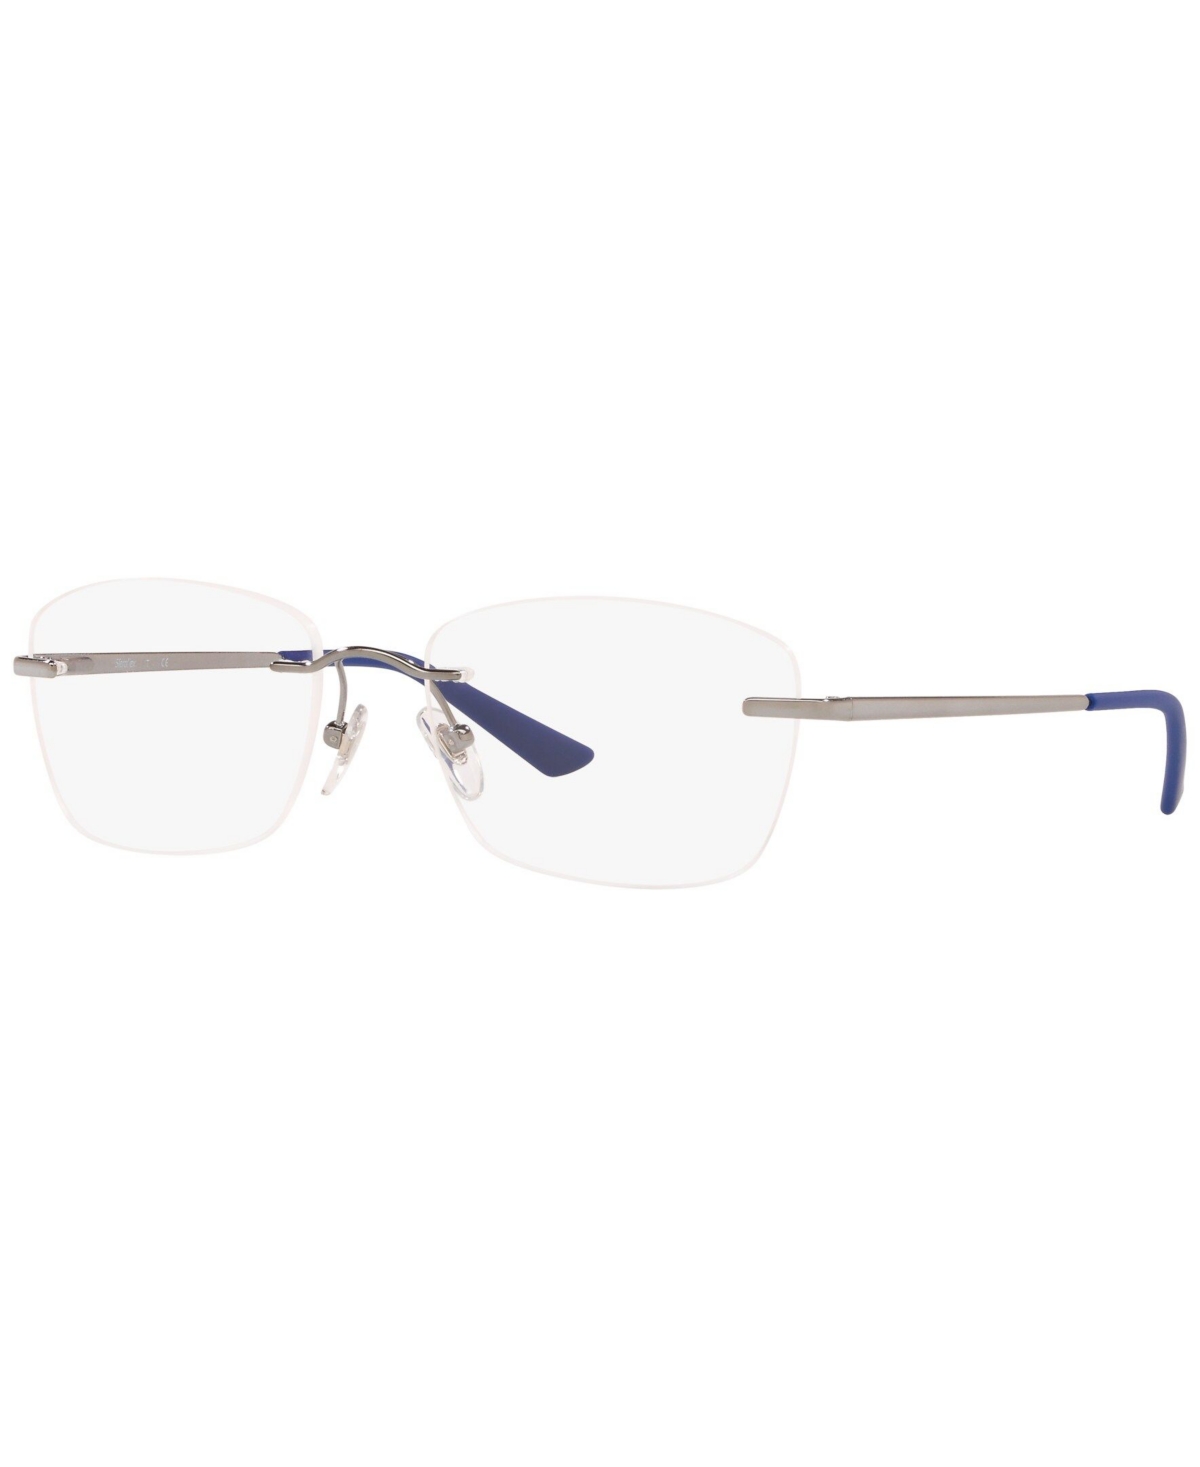 SF2599 Unisex Oval Eyeglasses - Darkgrey